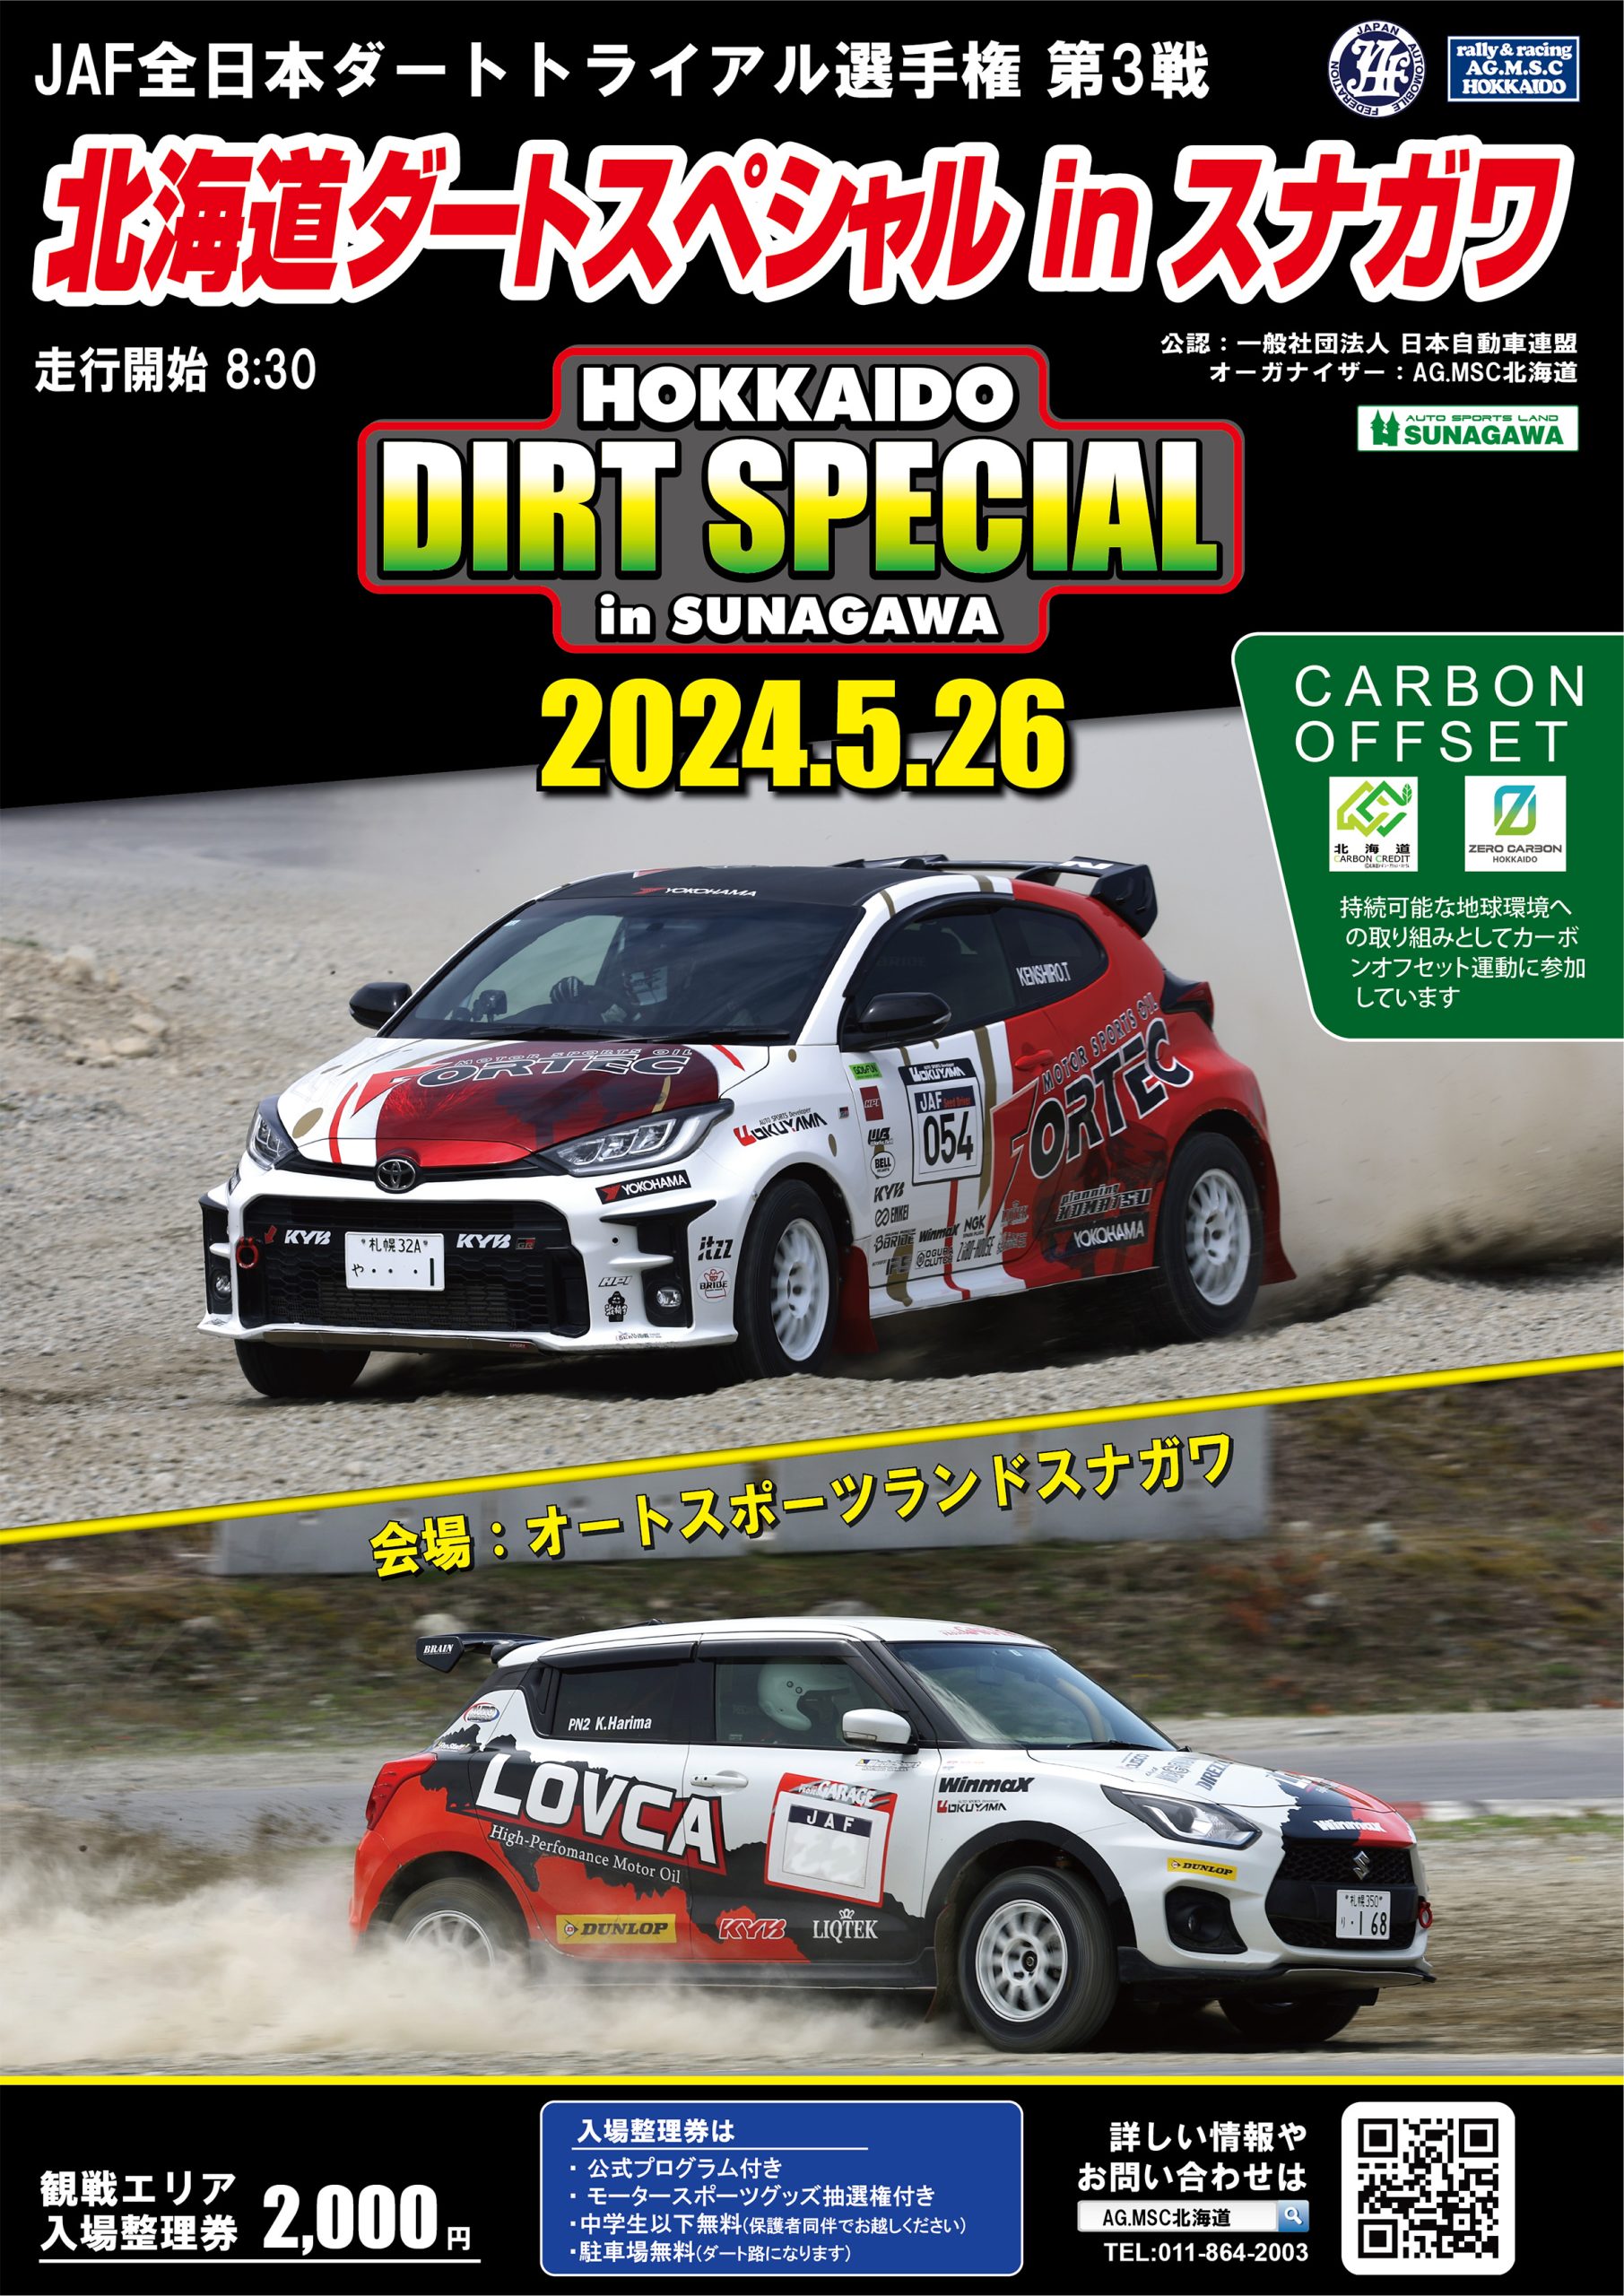 JAF全日本ダートトライアル選手権第3戦 北海道ダートスペシャルinスナガワのポスター